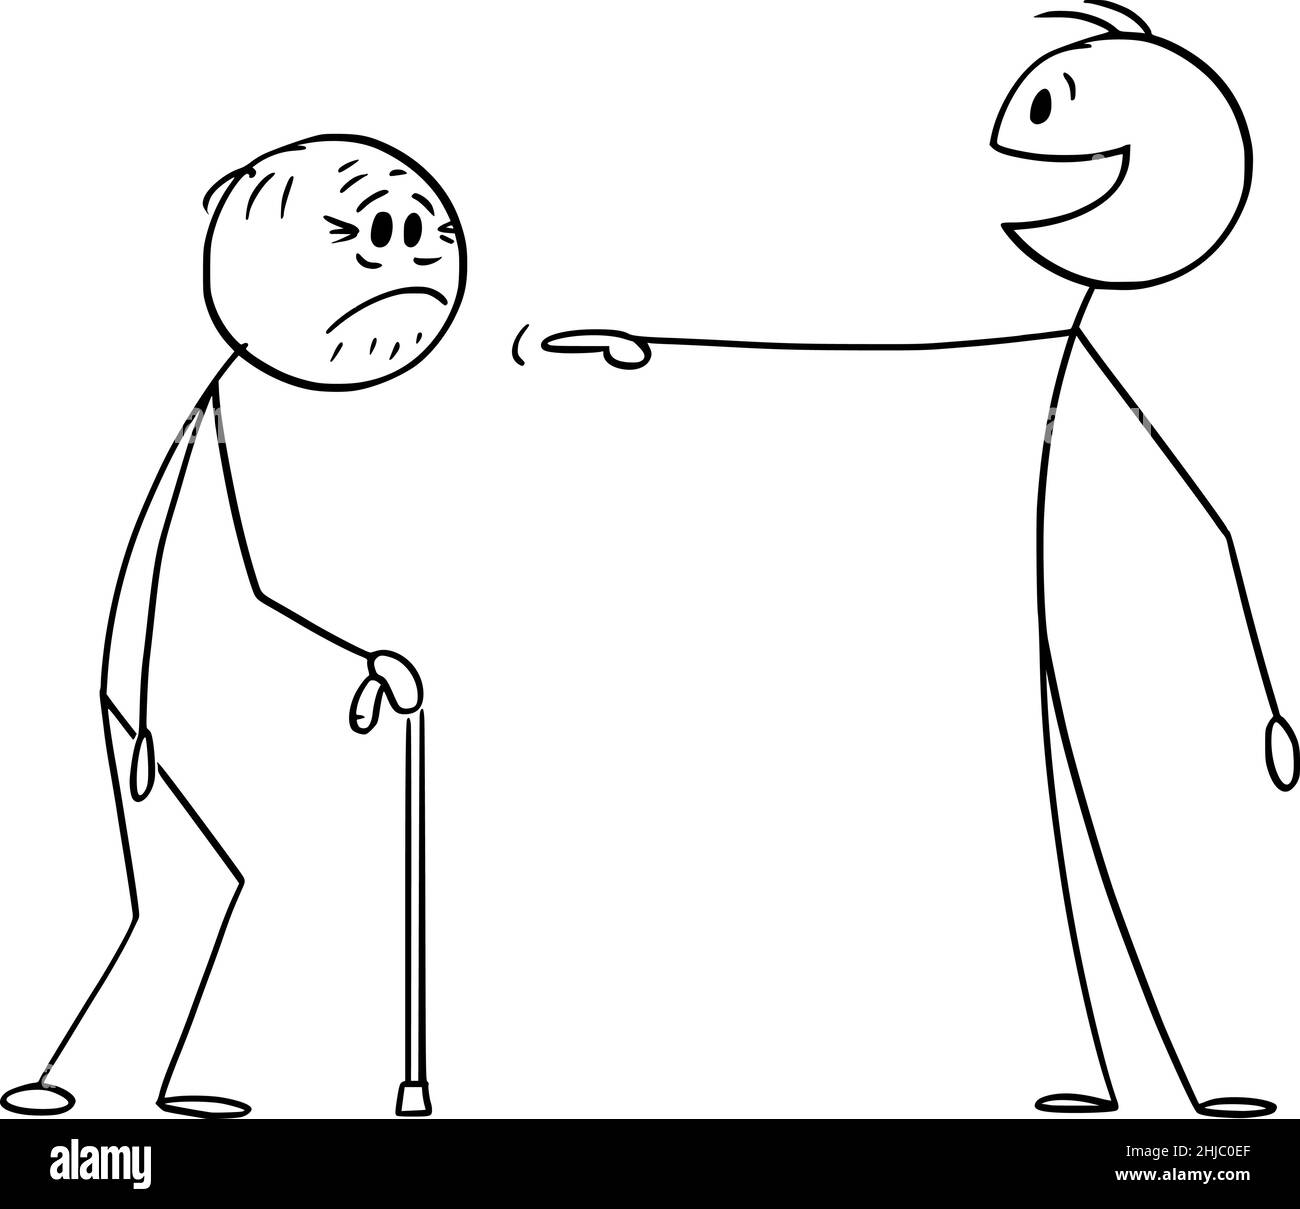 Jeune mocking ou ridiculiser la vieille personne, riant et pointant vers l'ancien, Vector Cartoon Stick Figure Illustration Illustration de Vecteur